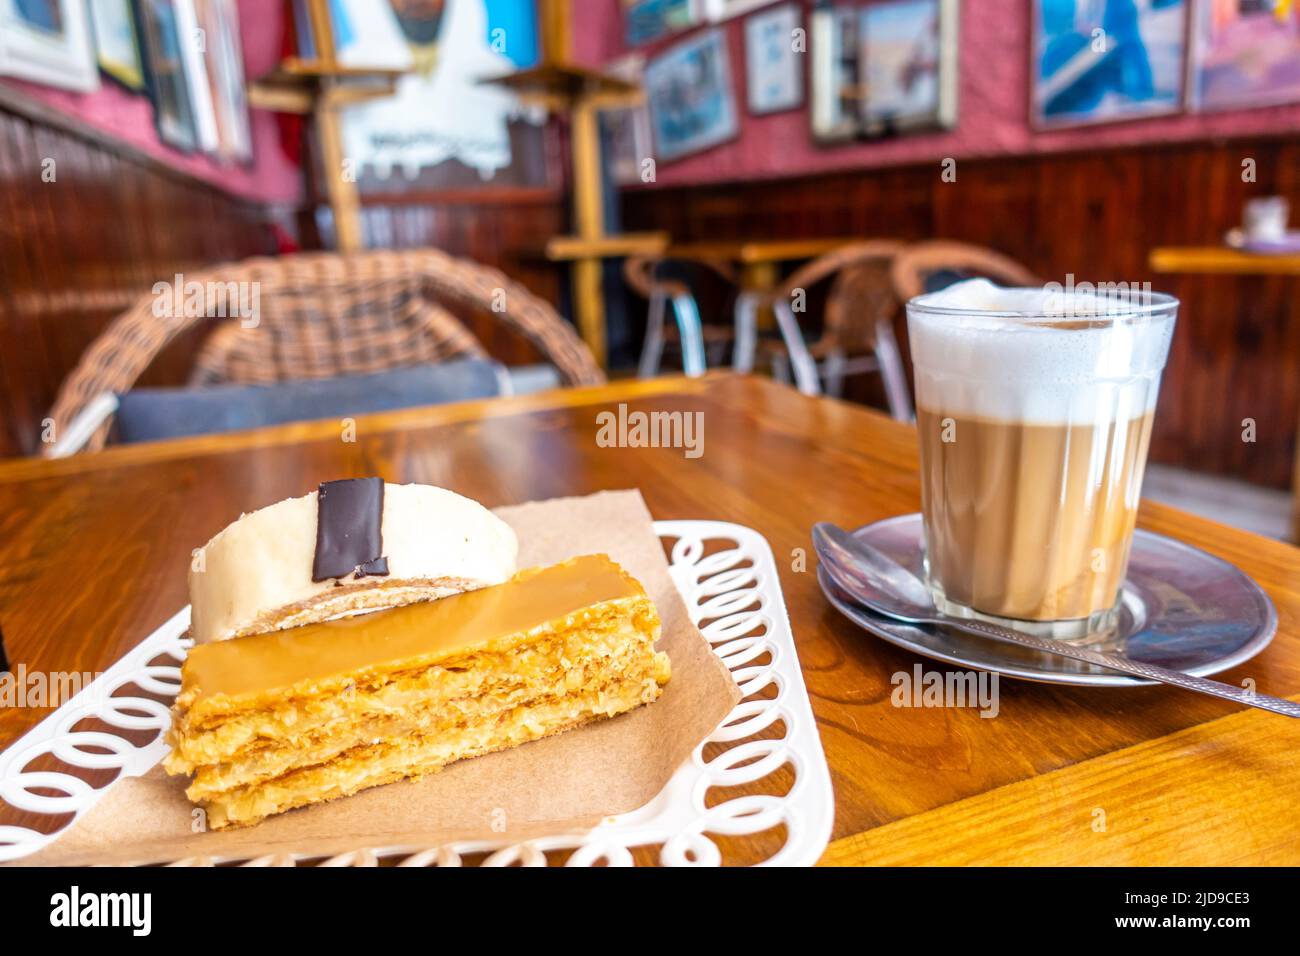 Gâteau et café Latte à la Patisserie Driss, fondue en 1928. Pasries, sucreries, gâteau et boutique historique et café à Essaouira, Maroc Banque D'Images